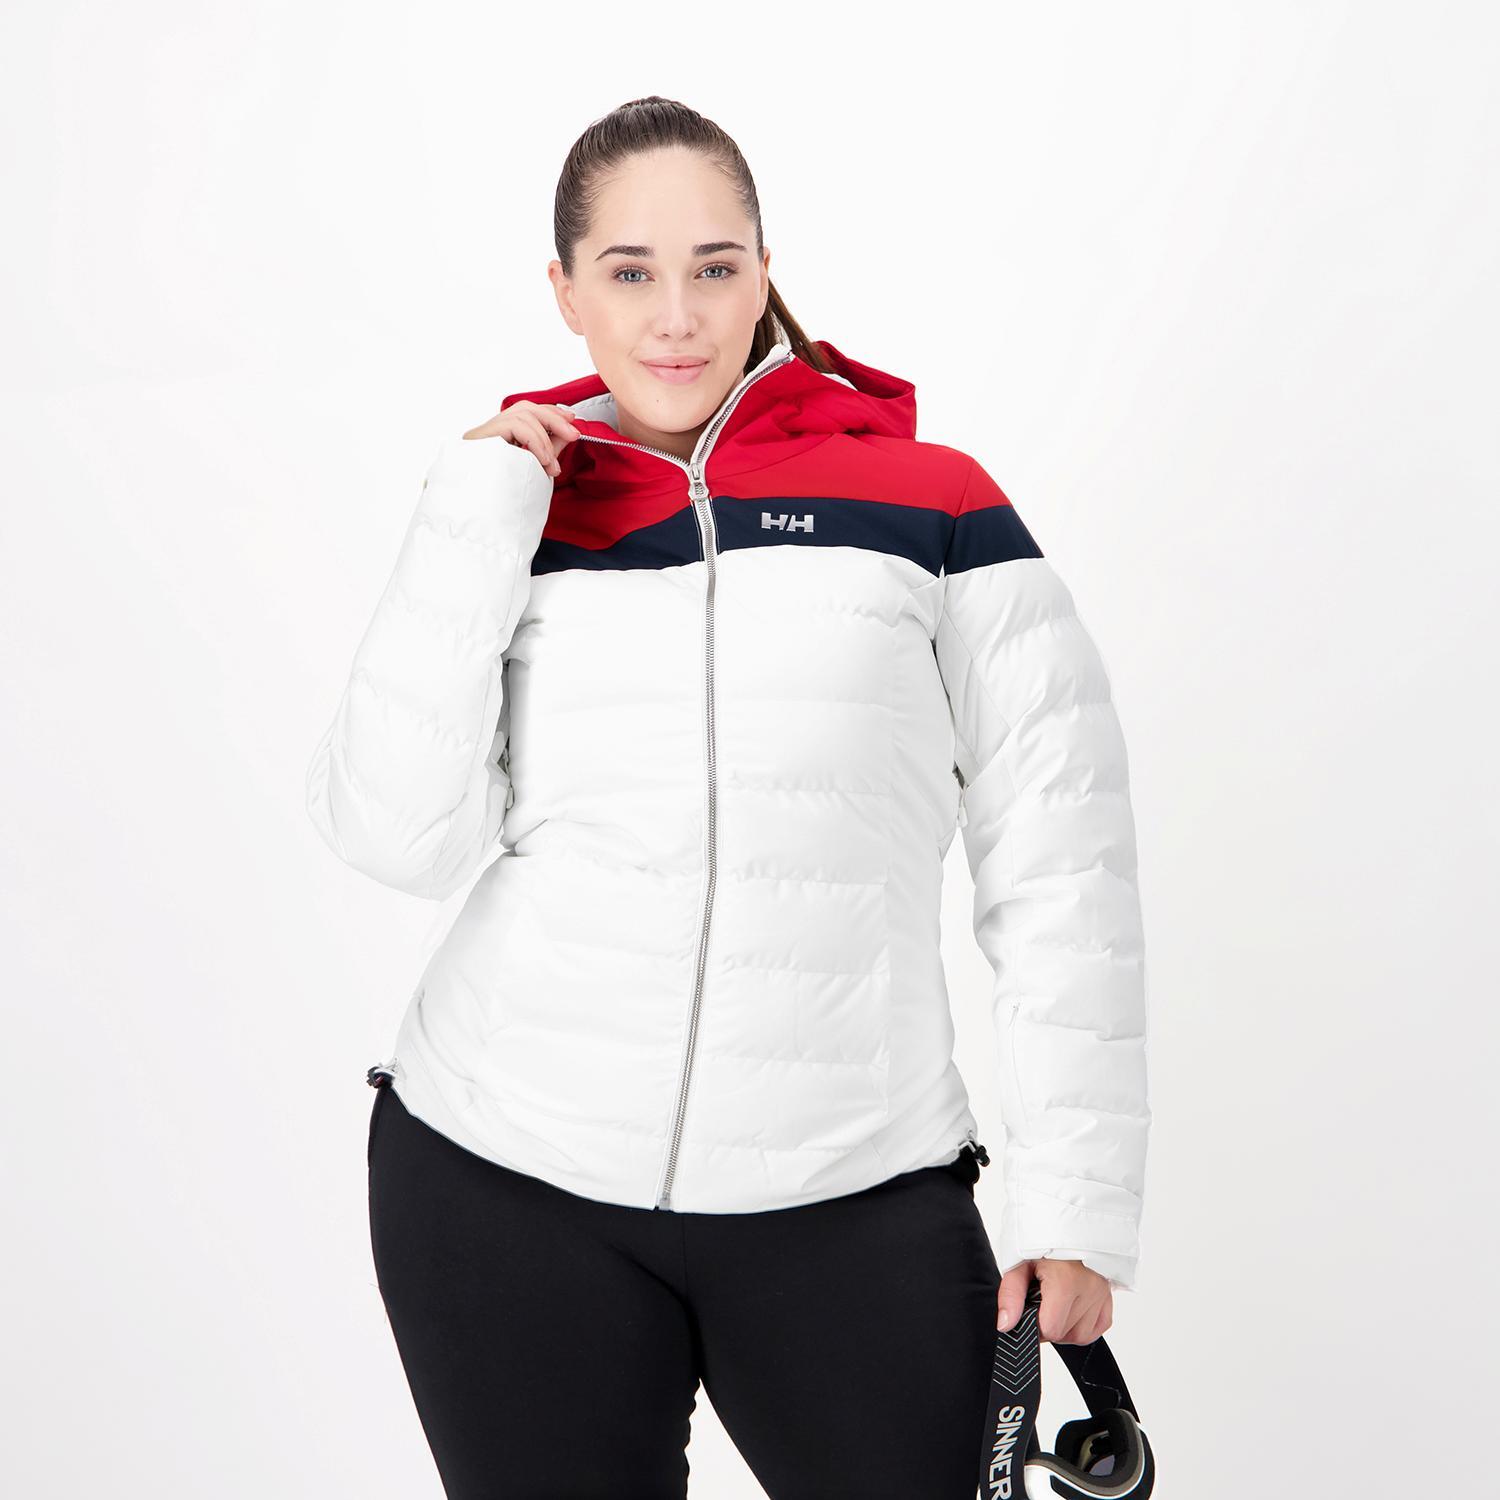 Chaqueta de esquí - Mujer - Helly Hansen W Imperial Puffy - 65690 001, Ferrer Sport